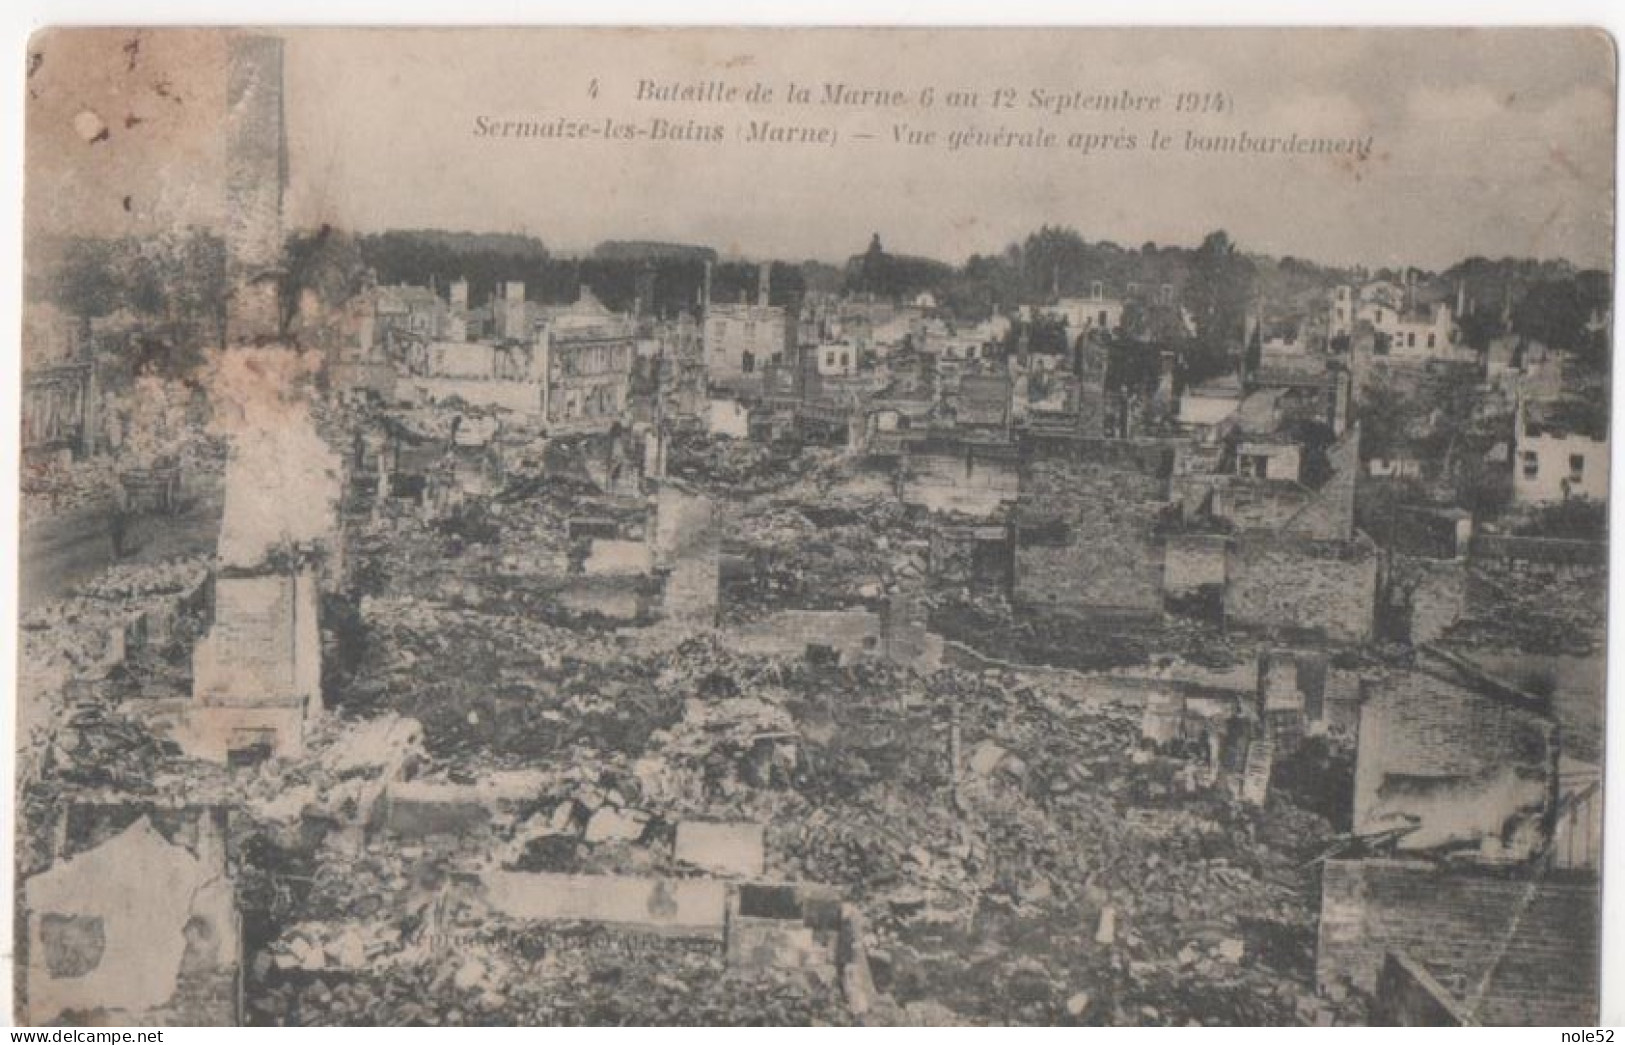 2.1€ : Vue Générale Après Le Bombardement - Bataille De L - Sermaize-les-Bains